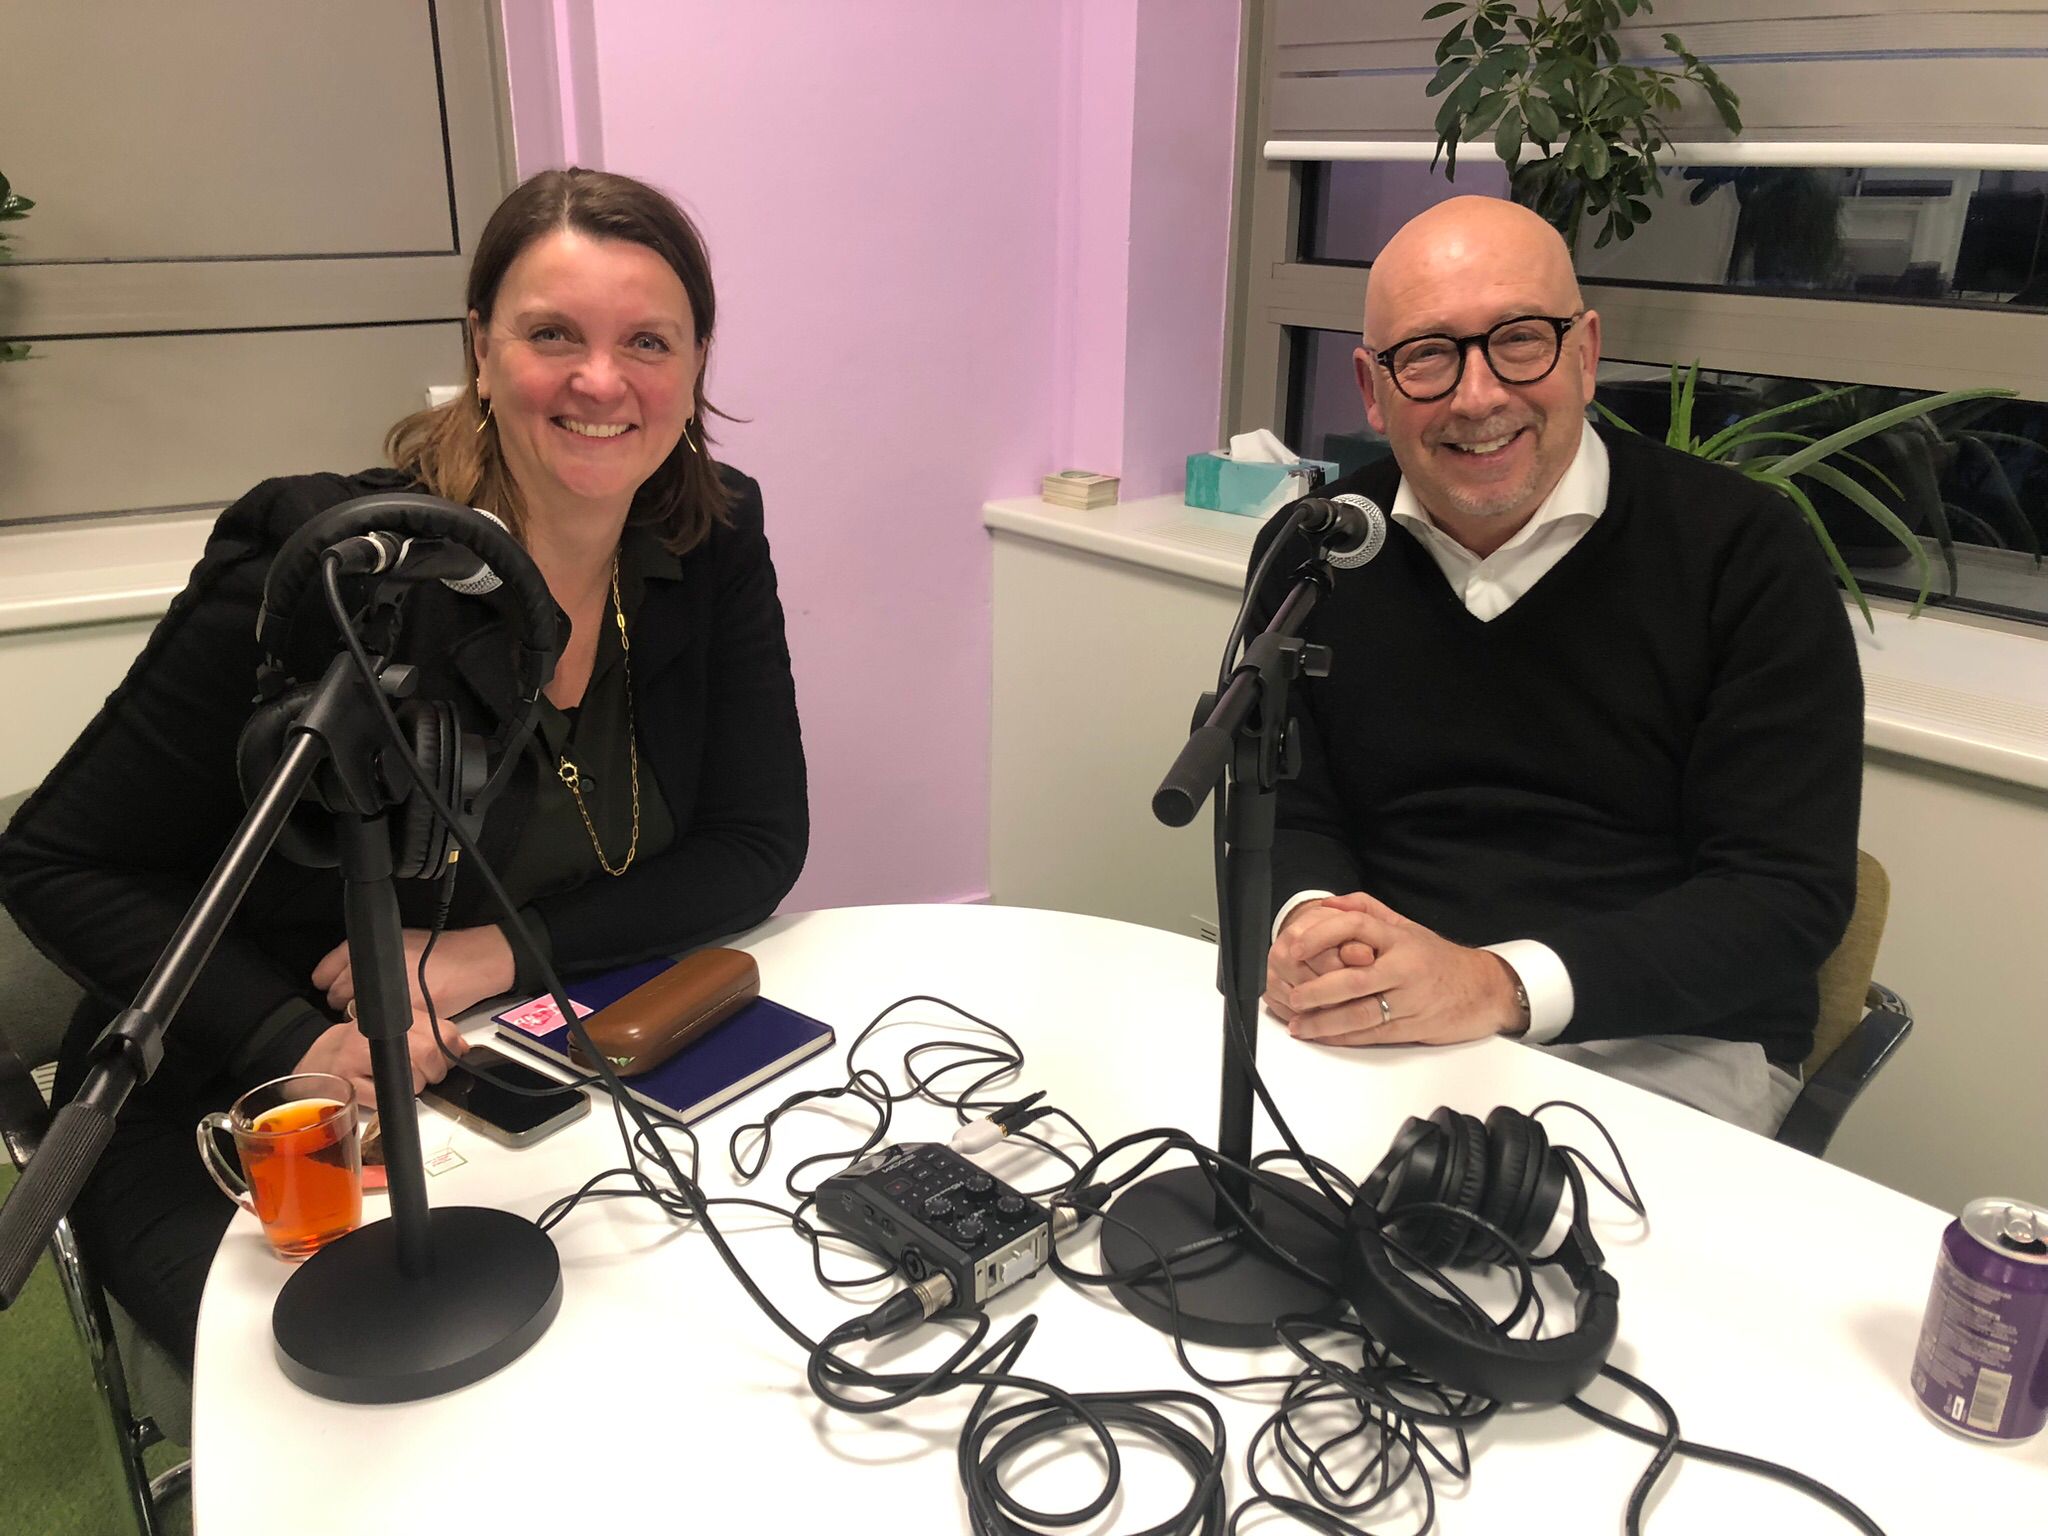 Luc van Bussel zu Gast beim Work Sound Podcast